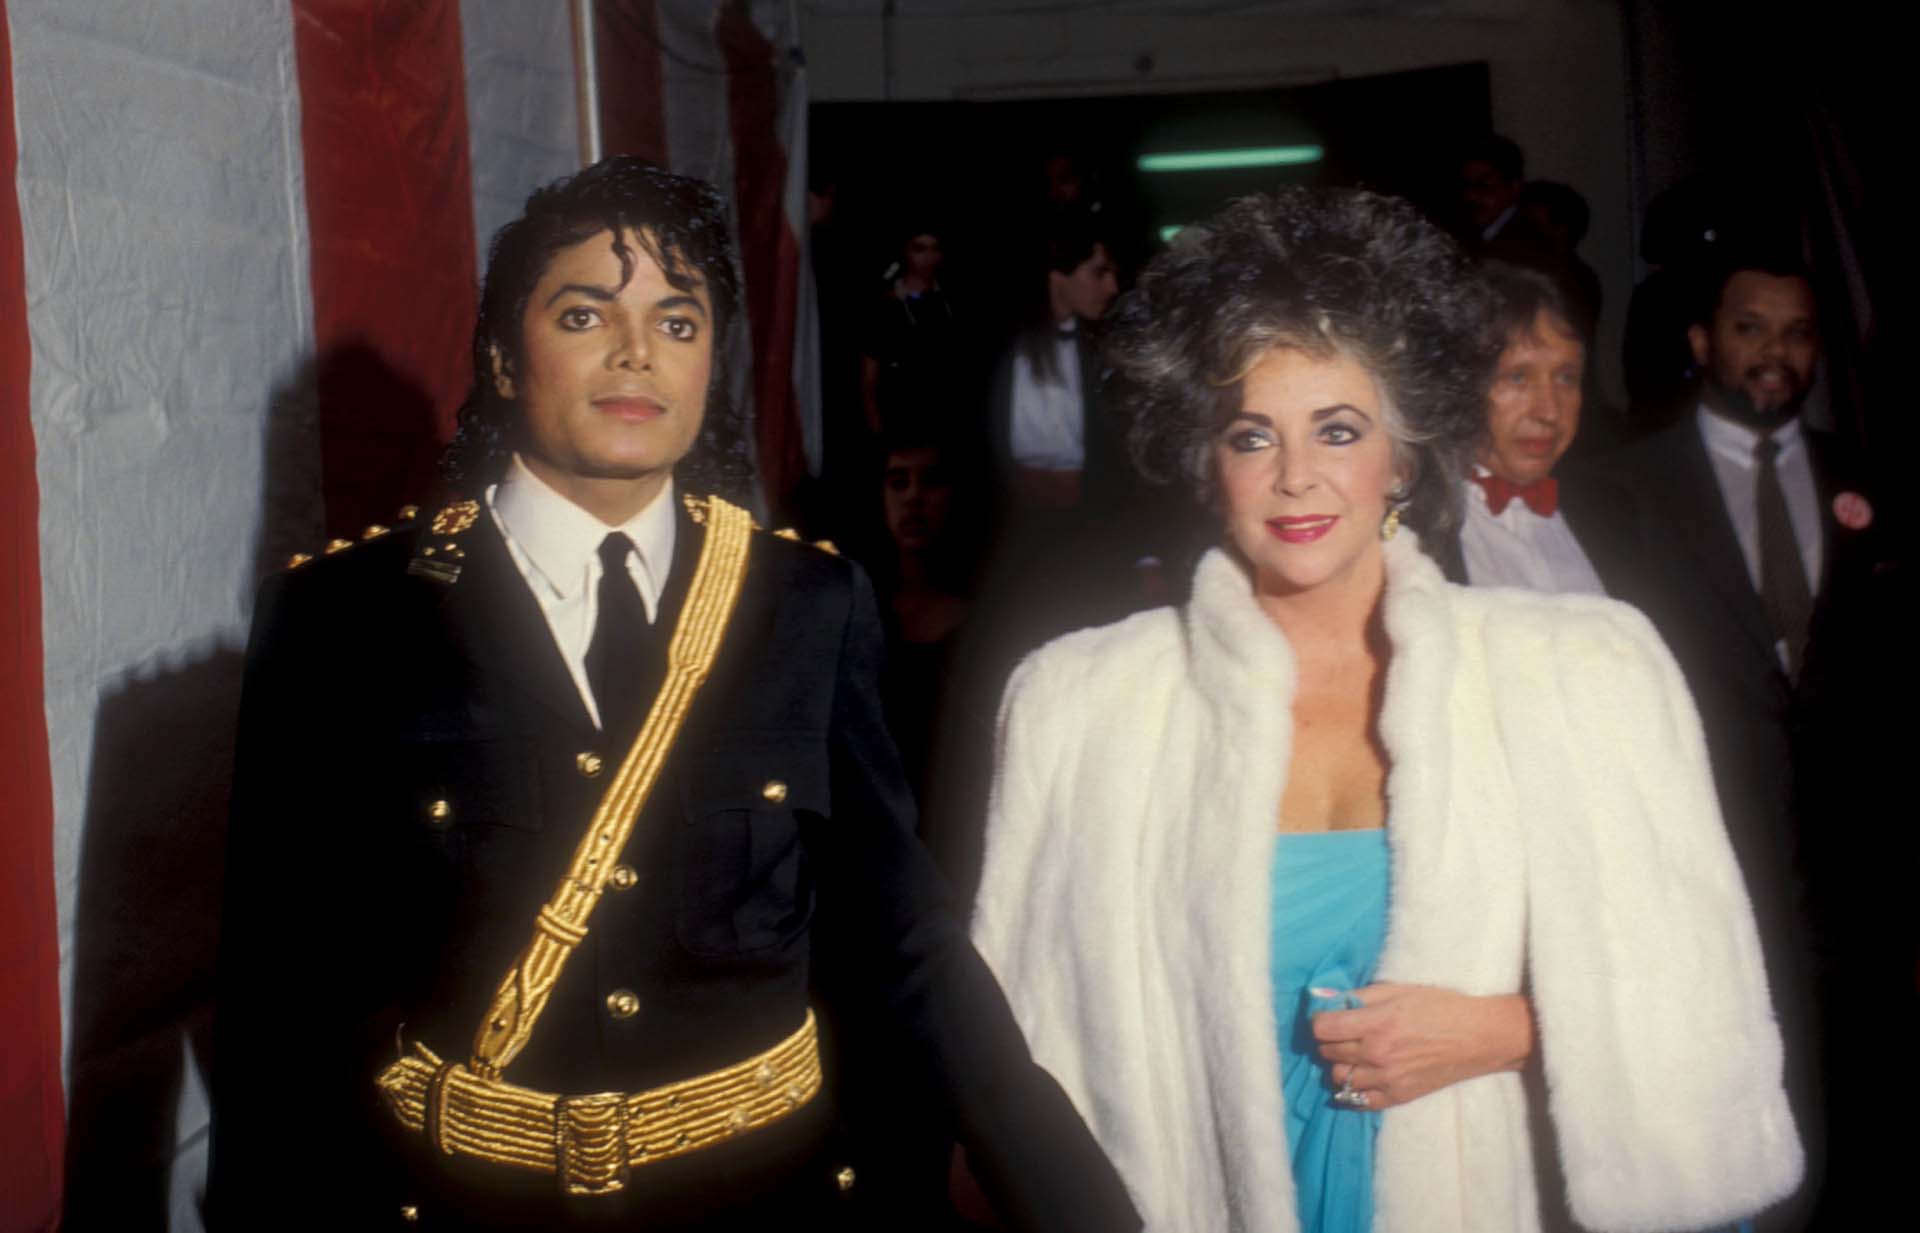 Michael Jackson junto a Elizabeth Taylor y Marlon Brando escaparon de Nueva York tras los atentados del 9/11. La historia dio lugar a verisones y hasta a una película televisiva que generó tanta controversia que nunca fue exhibida (Photo by Barry King/WireImage)